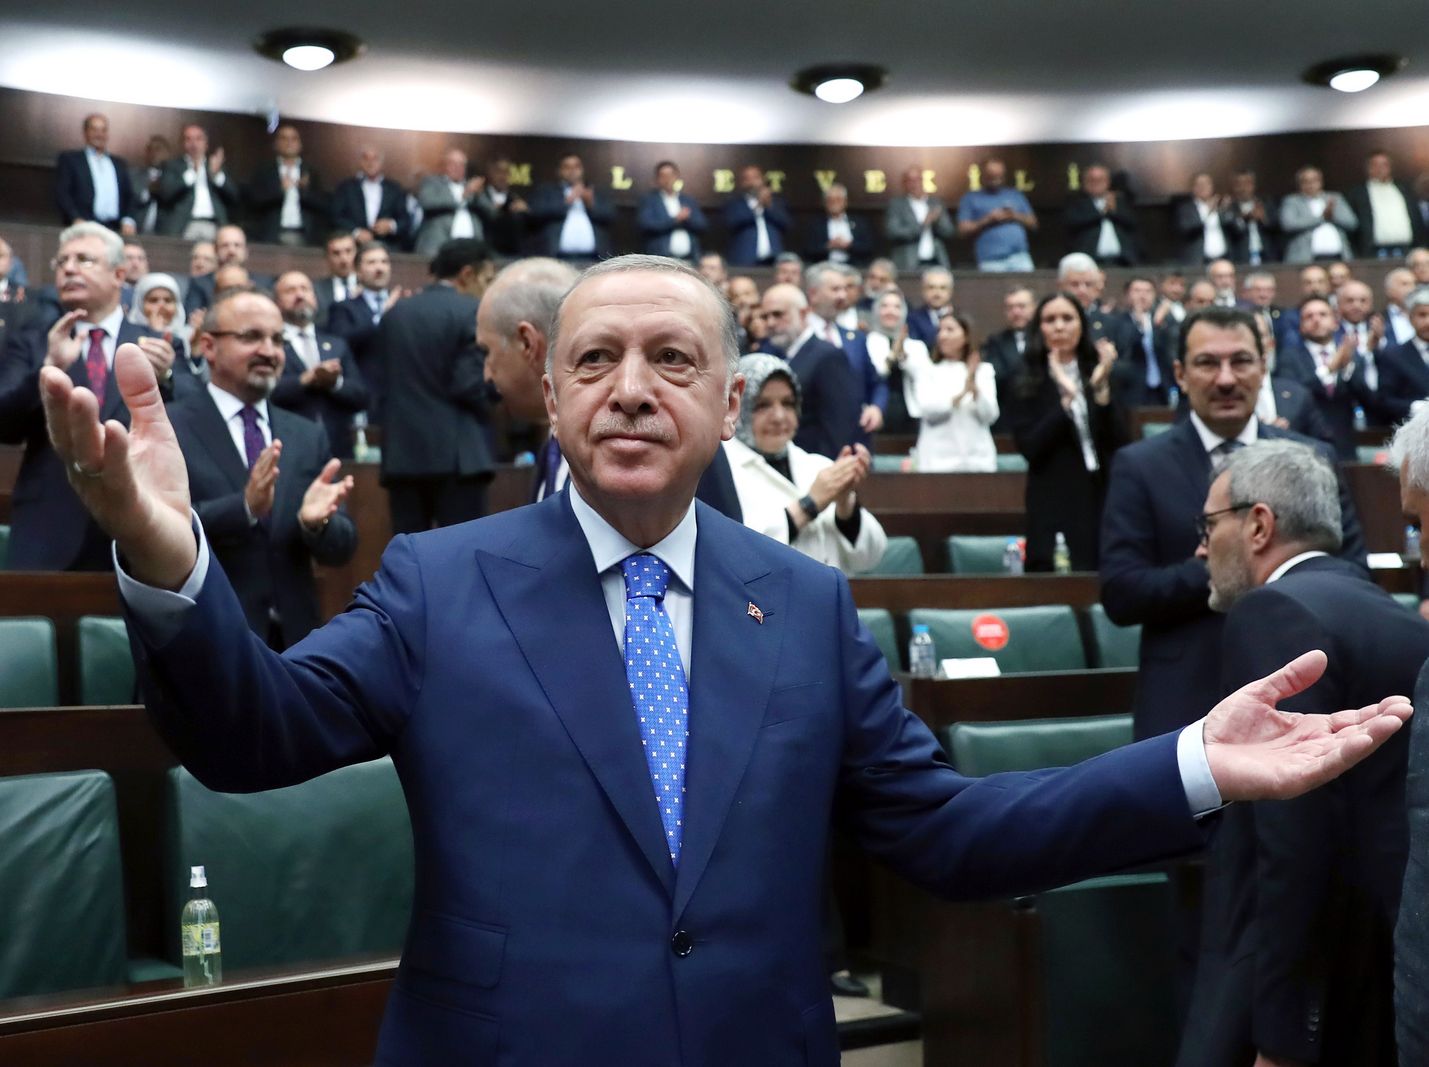 Turkin presidentti Recep Tayyip Erdogan on Oikeus ja kehitys -puolueen johtaja. Nyt voimakastahtoinen ja uskonnon roolia yhteiskunnassa korostava Ergodan on poikkiteloin Suomen Nato-jäsenyyden edessä. Erdogan sai puolueensa jäseniltä raikuvia suosionosoituksia Ankarassa 18. toukokuuta.